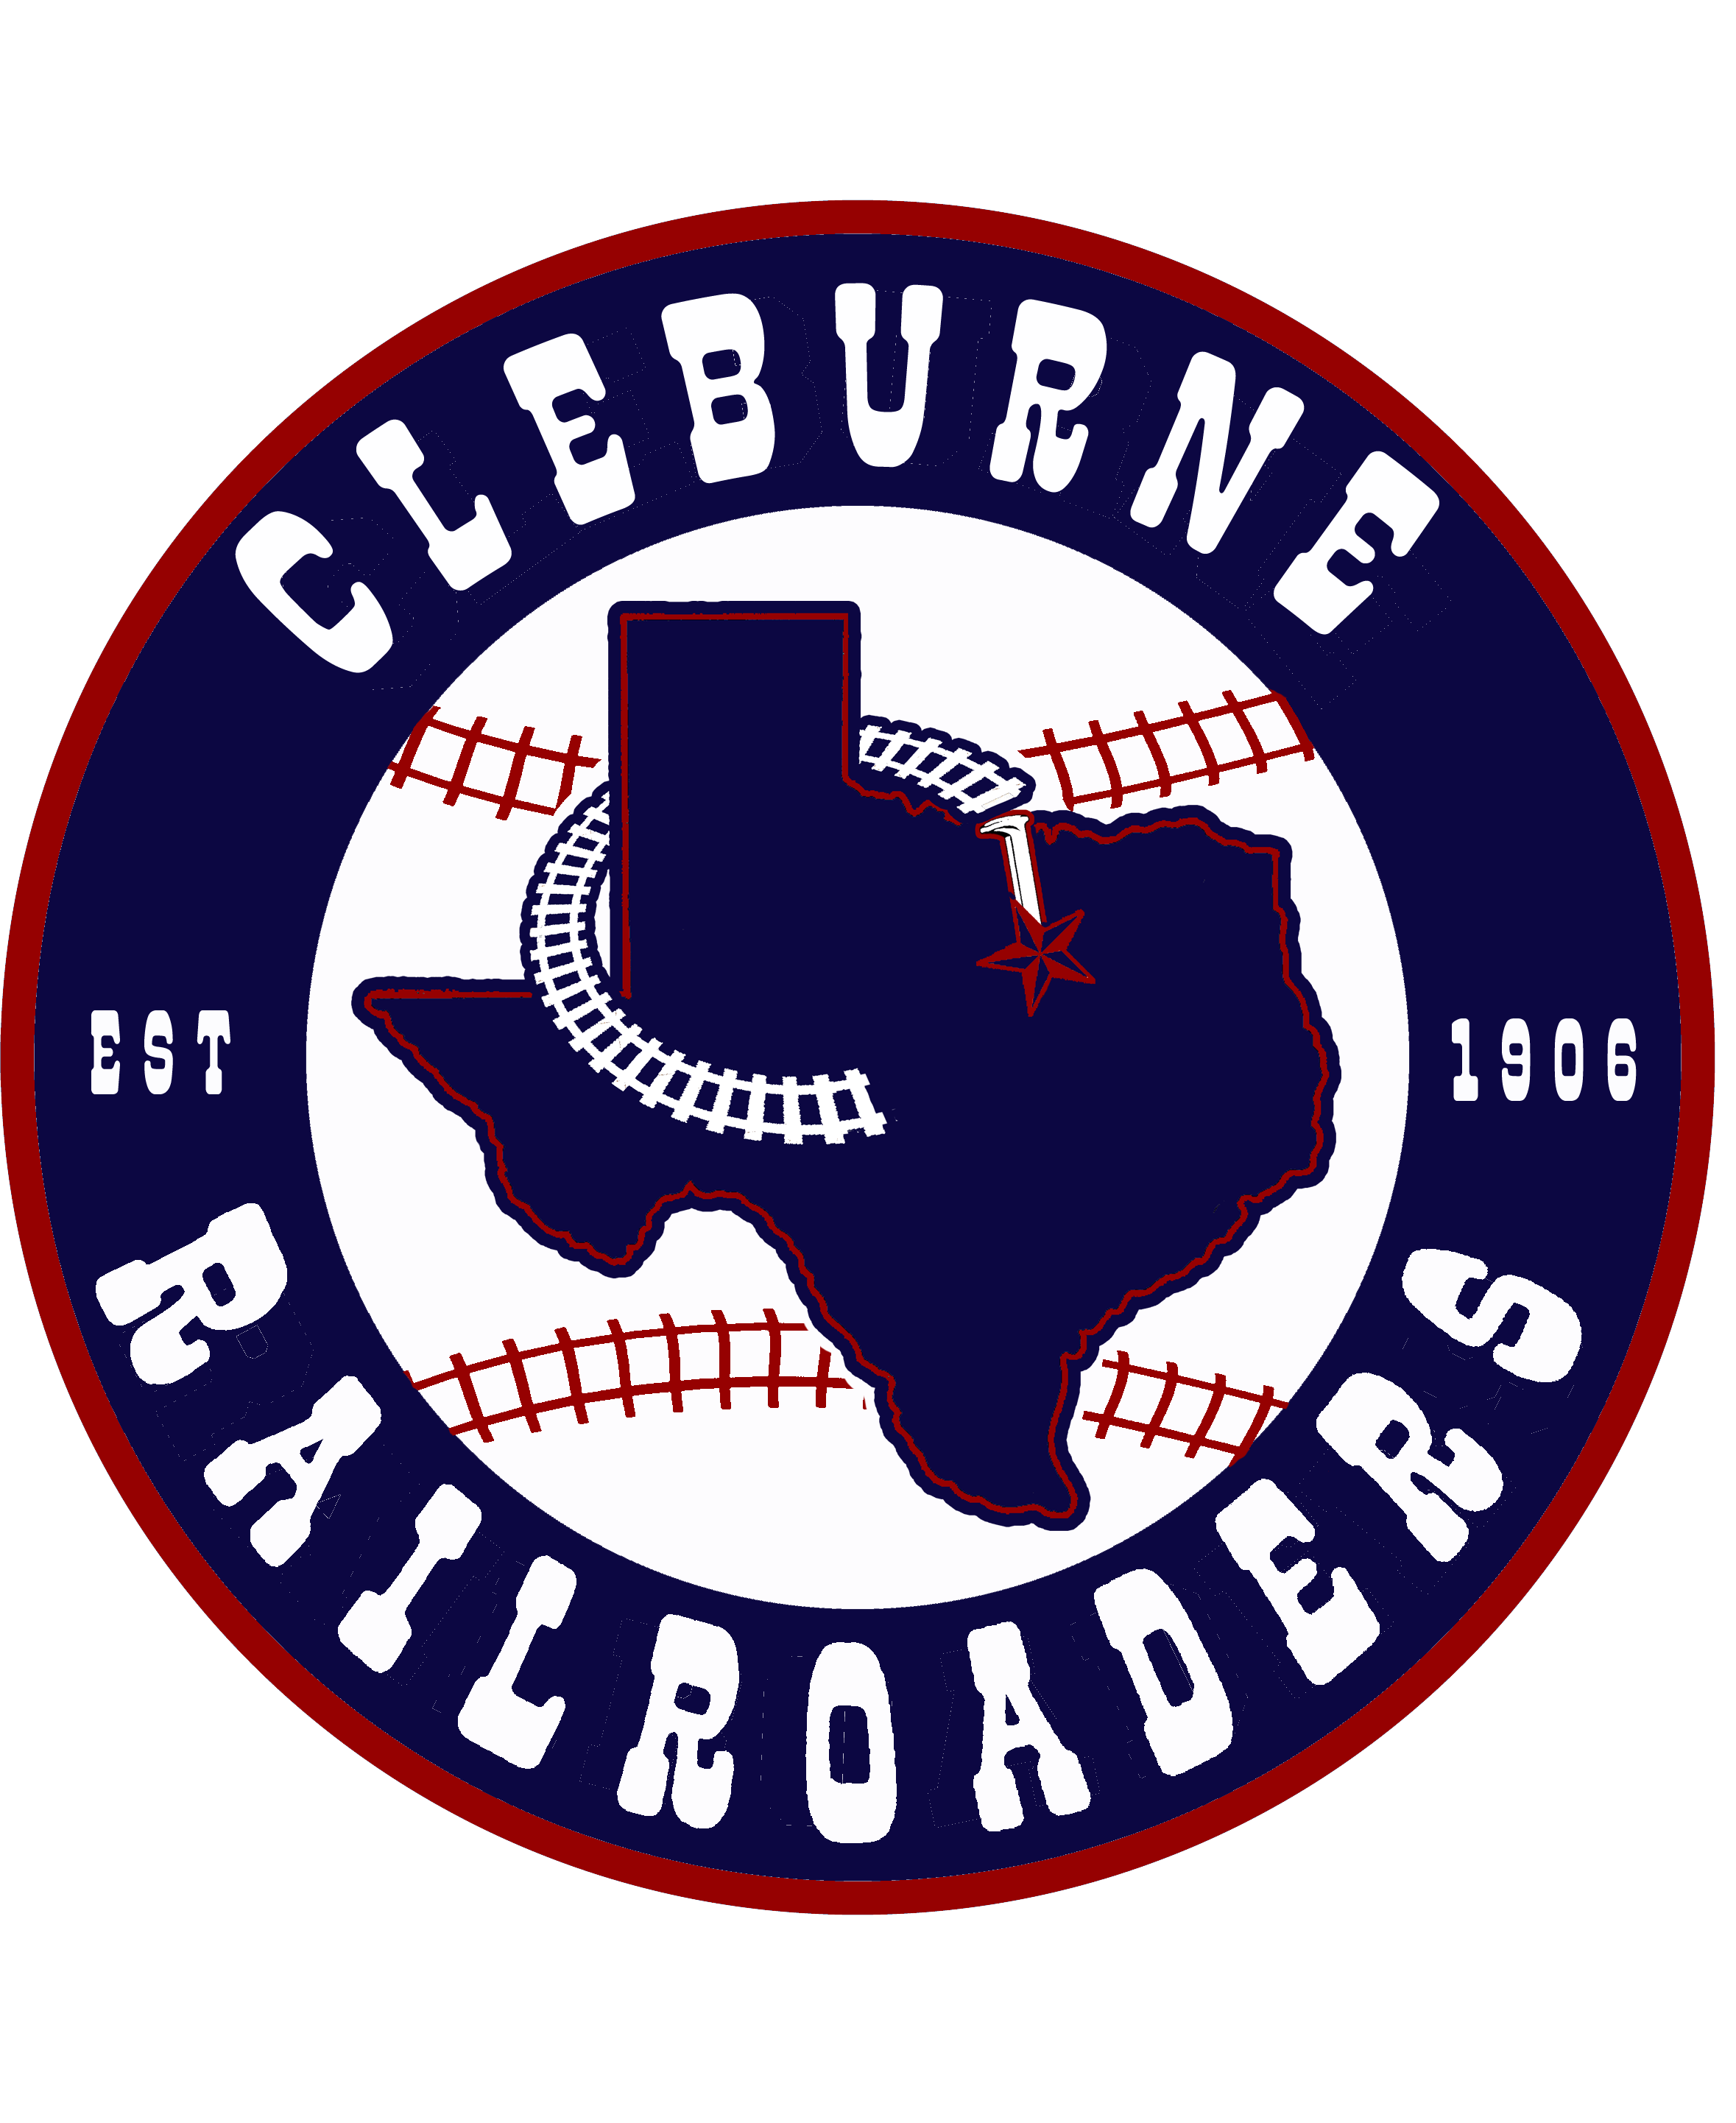 Cleburne Railroaders